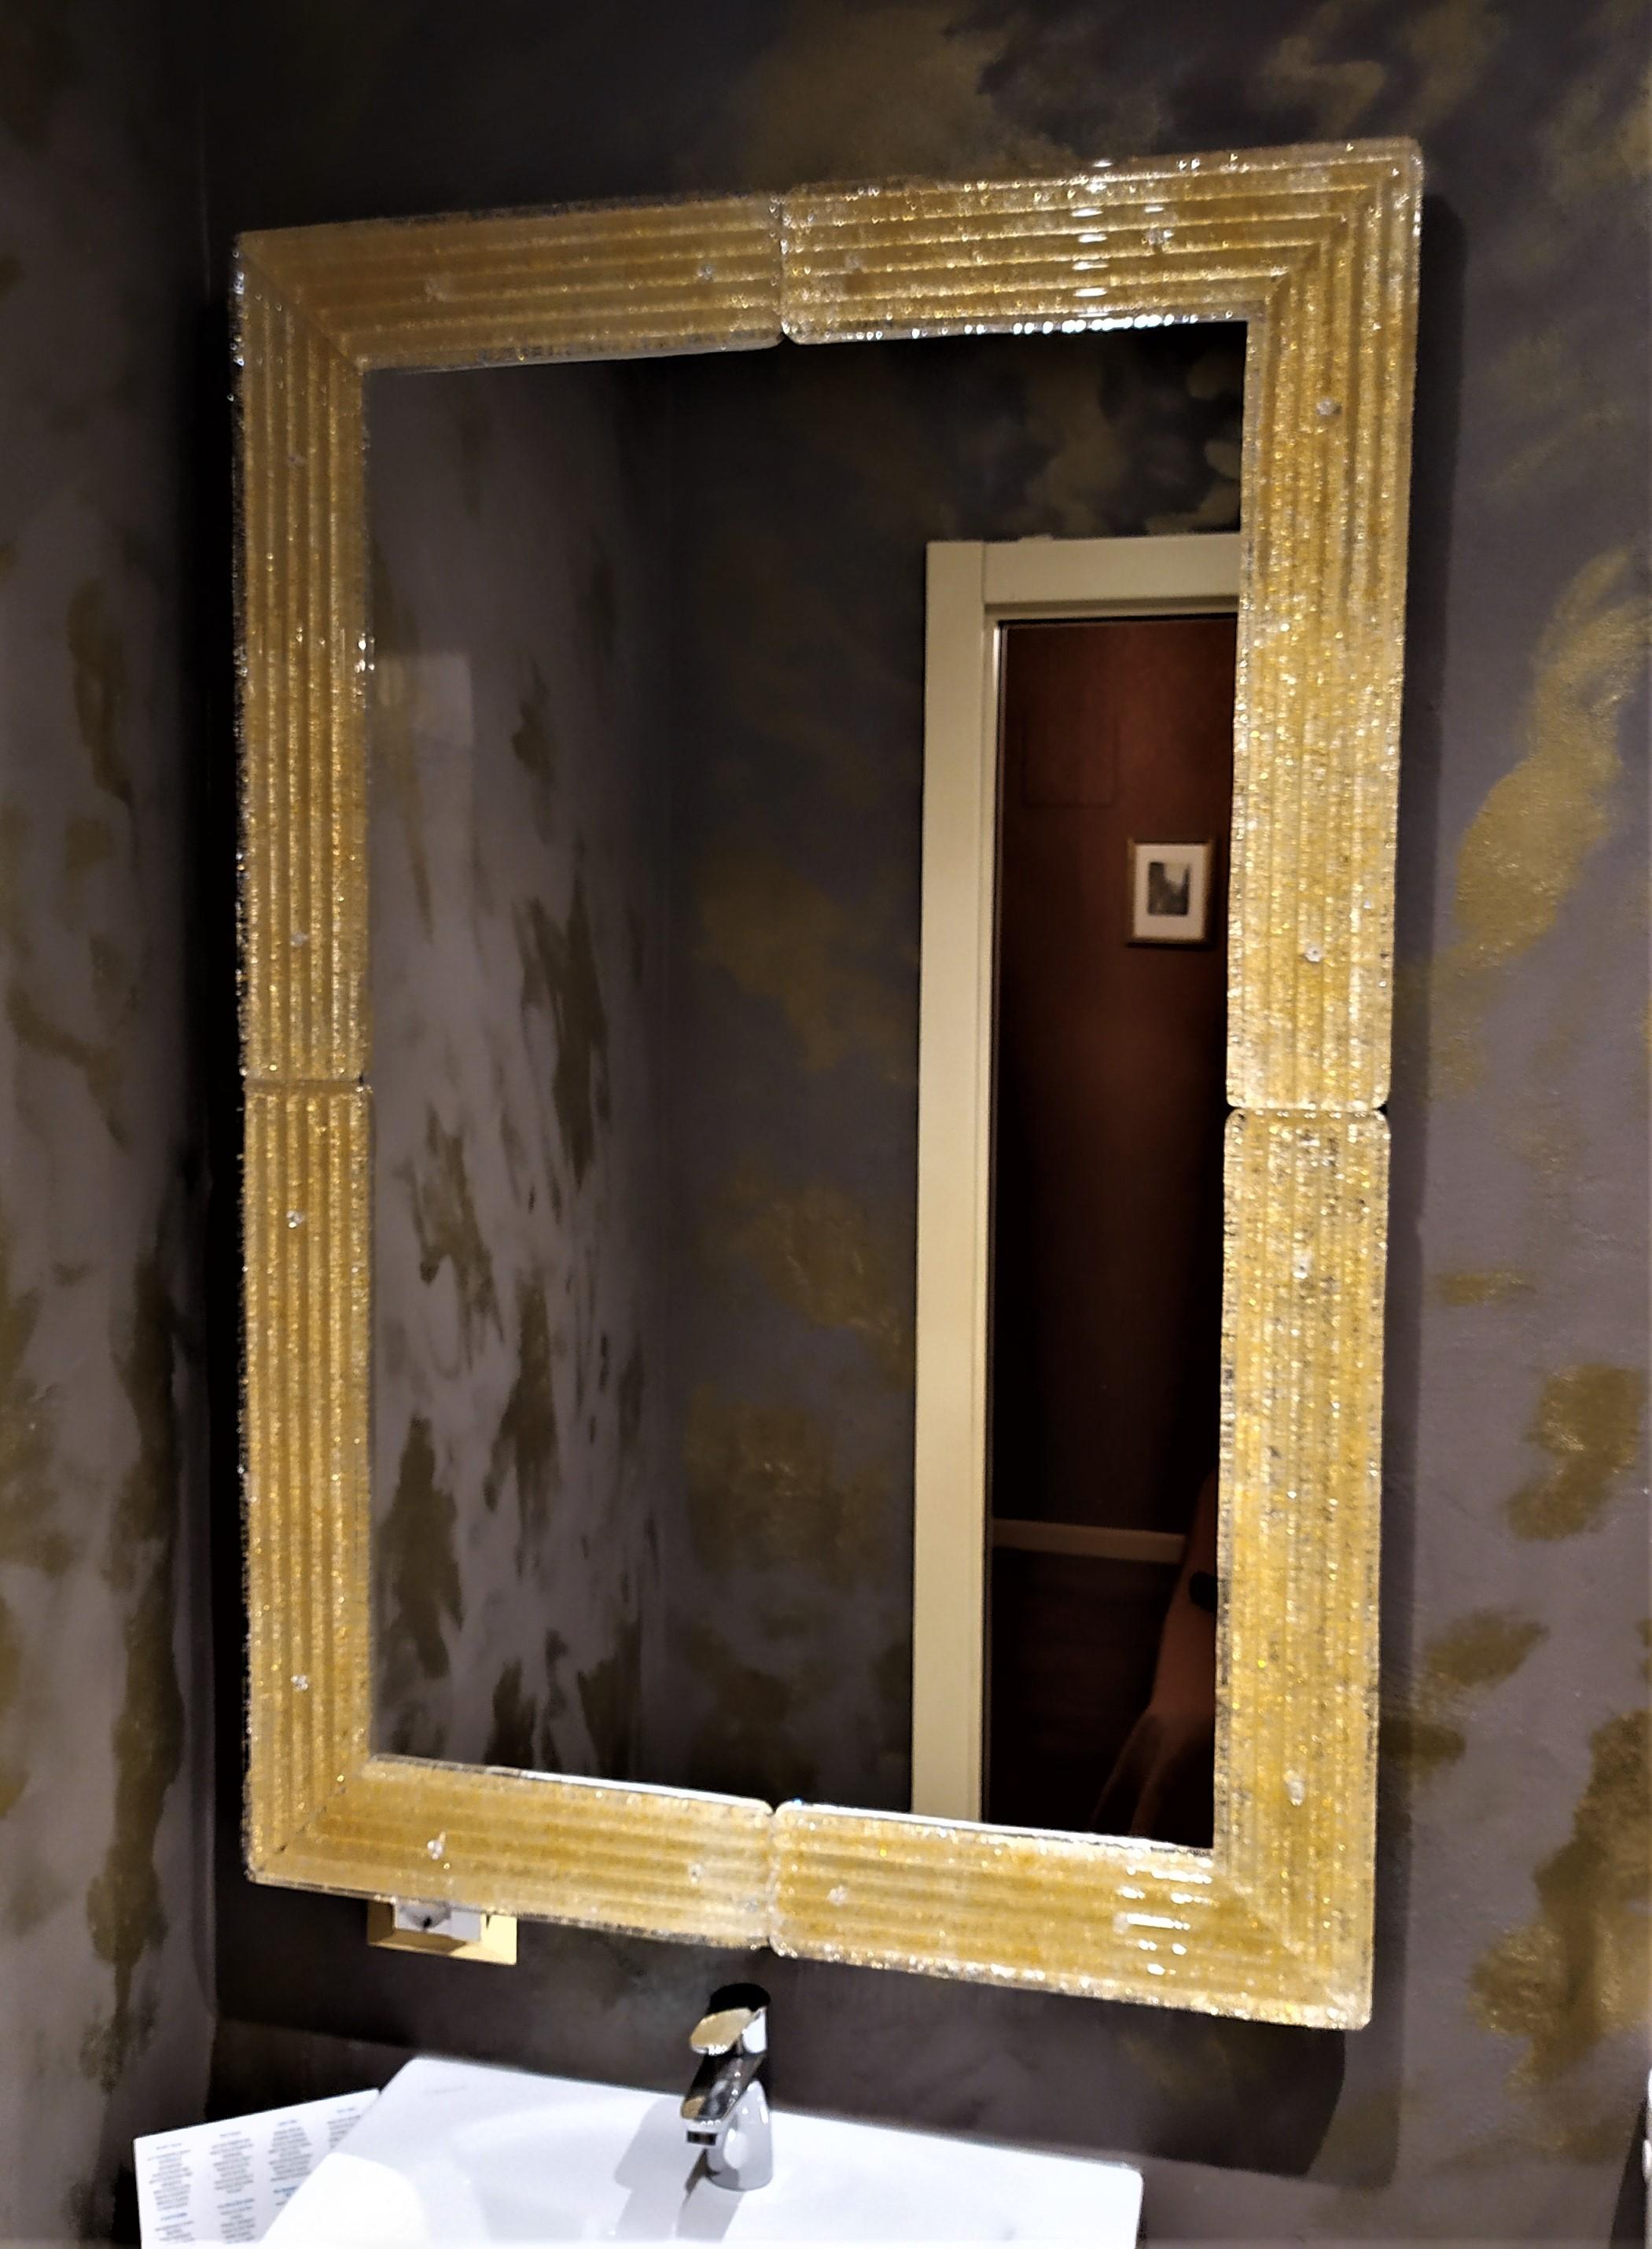 Zeitgenössischer Spiegel im Stil des 21. Jahrhunderts mit einem luxuriösen Rahmen aus Muranoglas, der nach den alten Traditionen und Verfahren der Muranoglasindustrie hergestellt wird. Der Rahmen wird geschnitten, geformt und in den Ecken poliert,